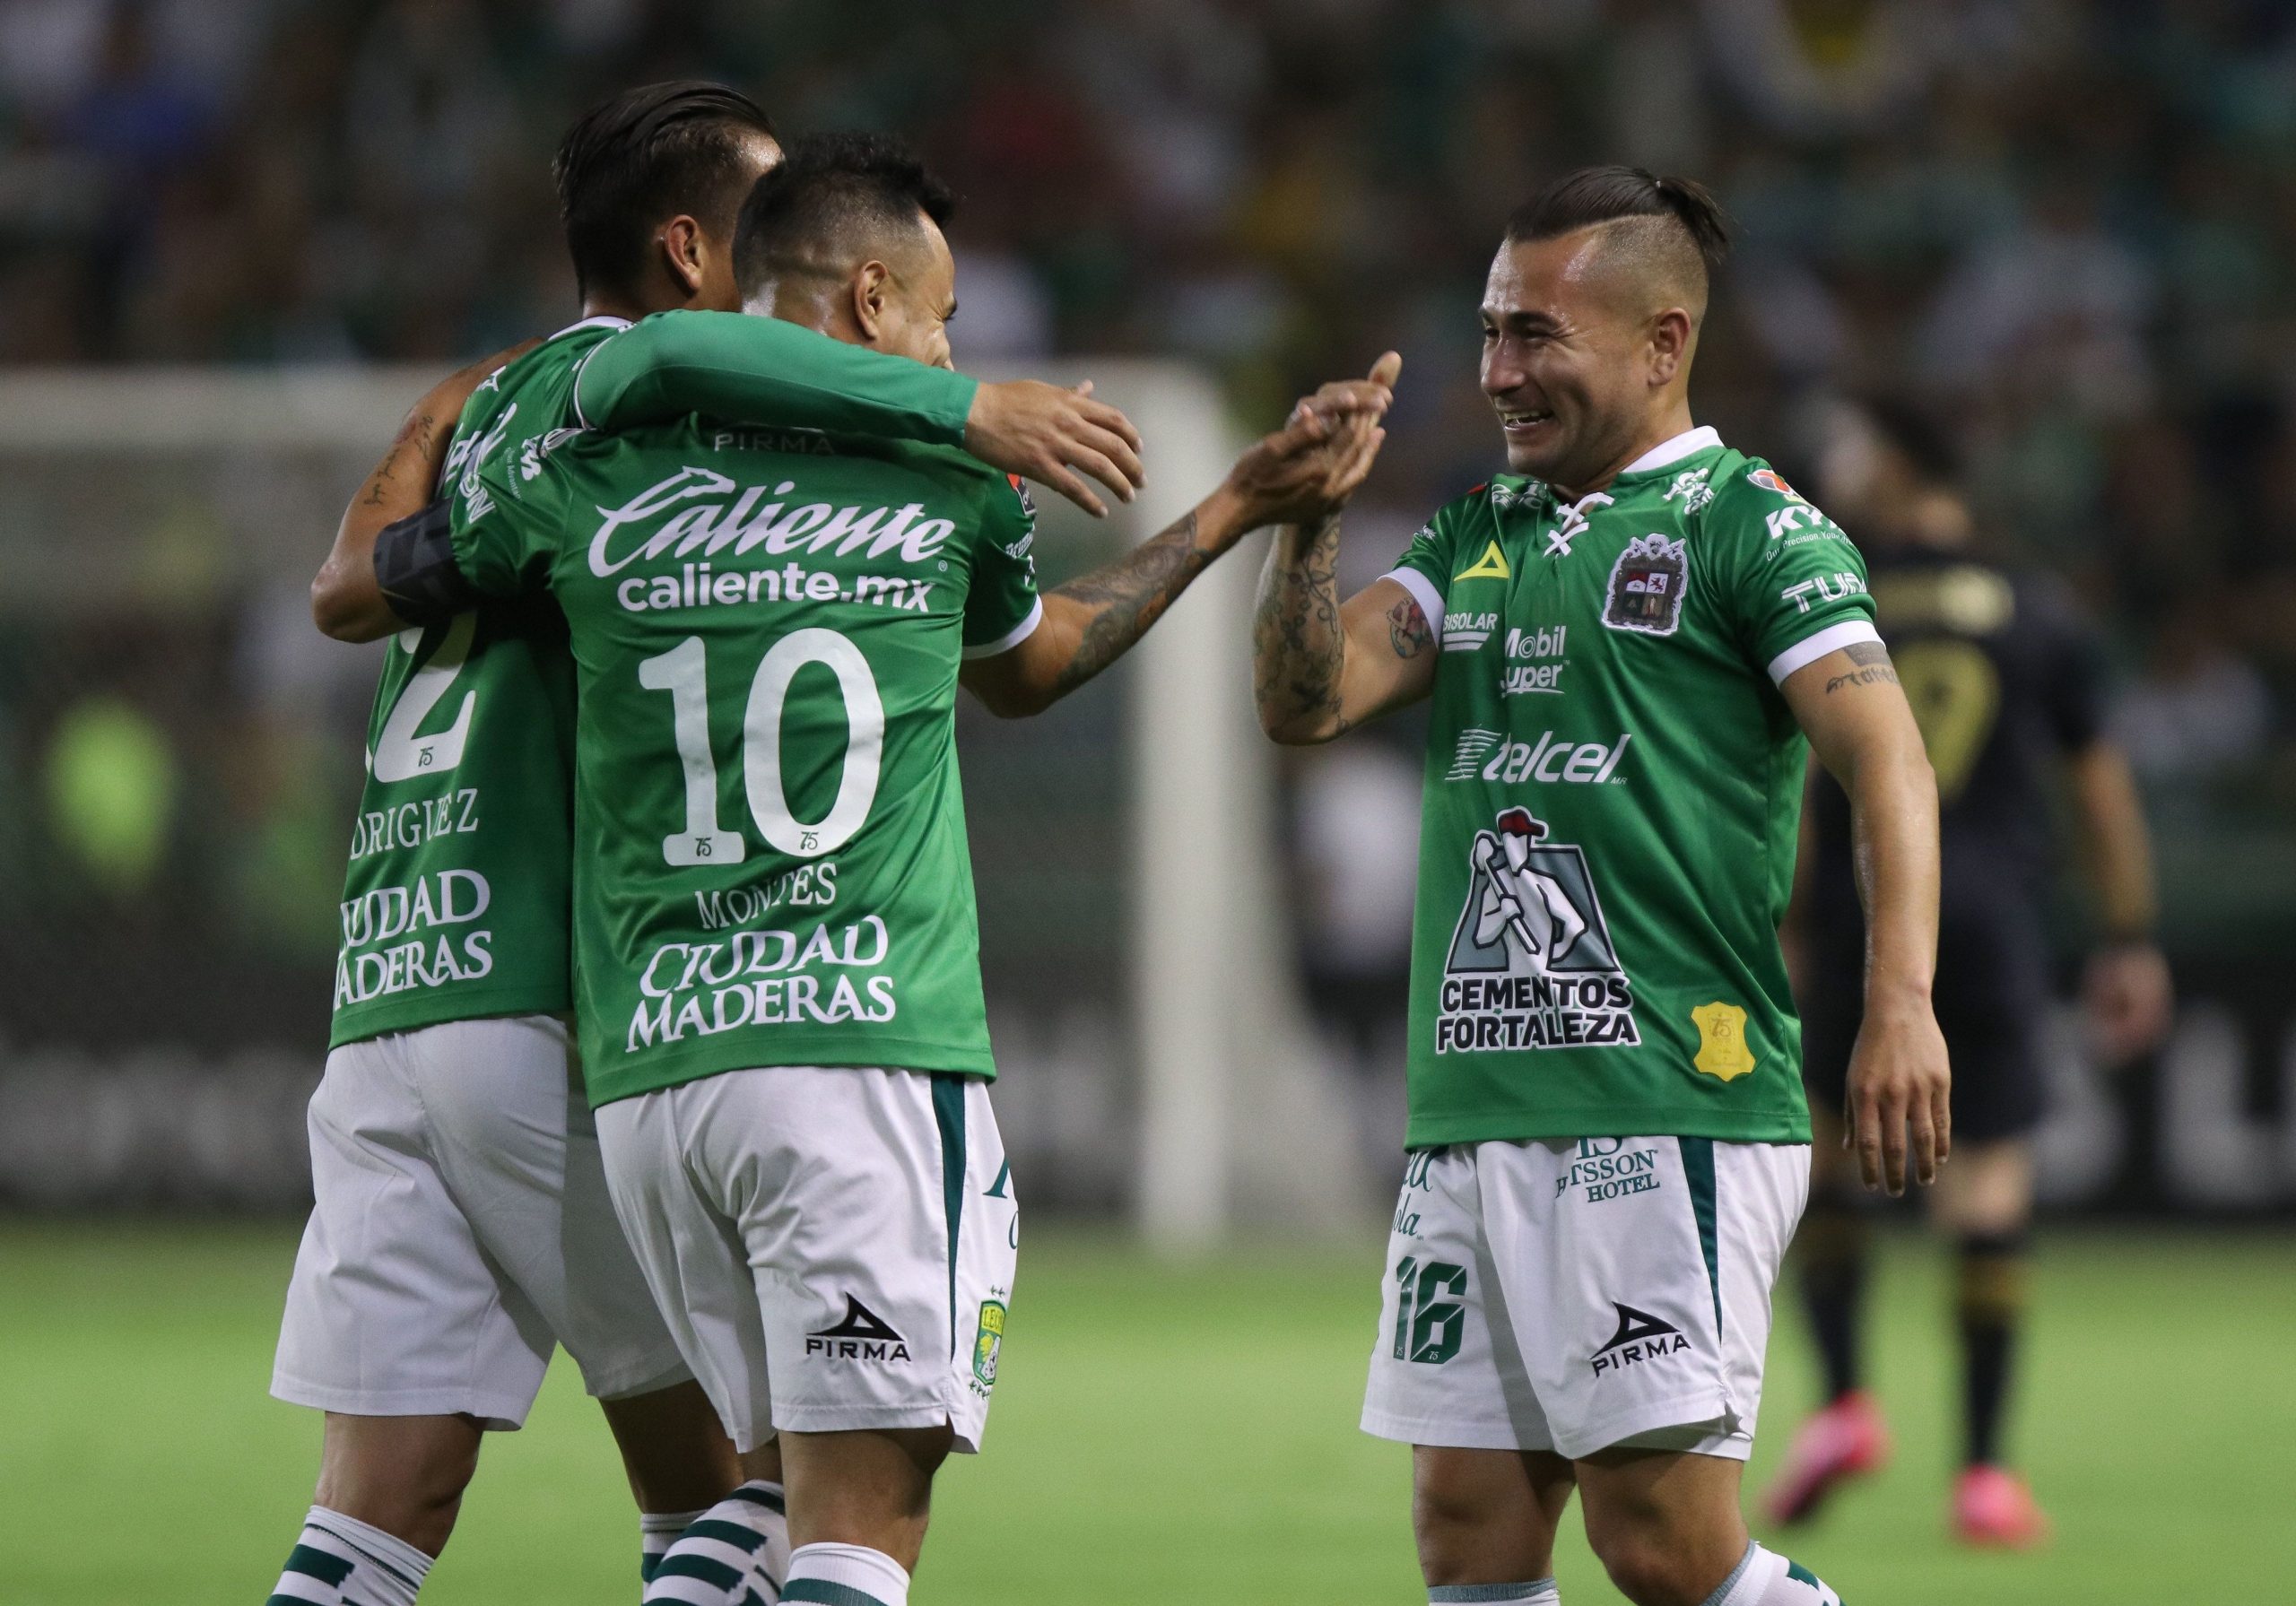 Los jugadores, equipos y tendencias a seguir en la vuelta de la Liga MX